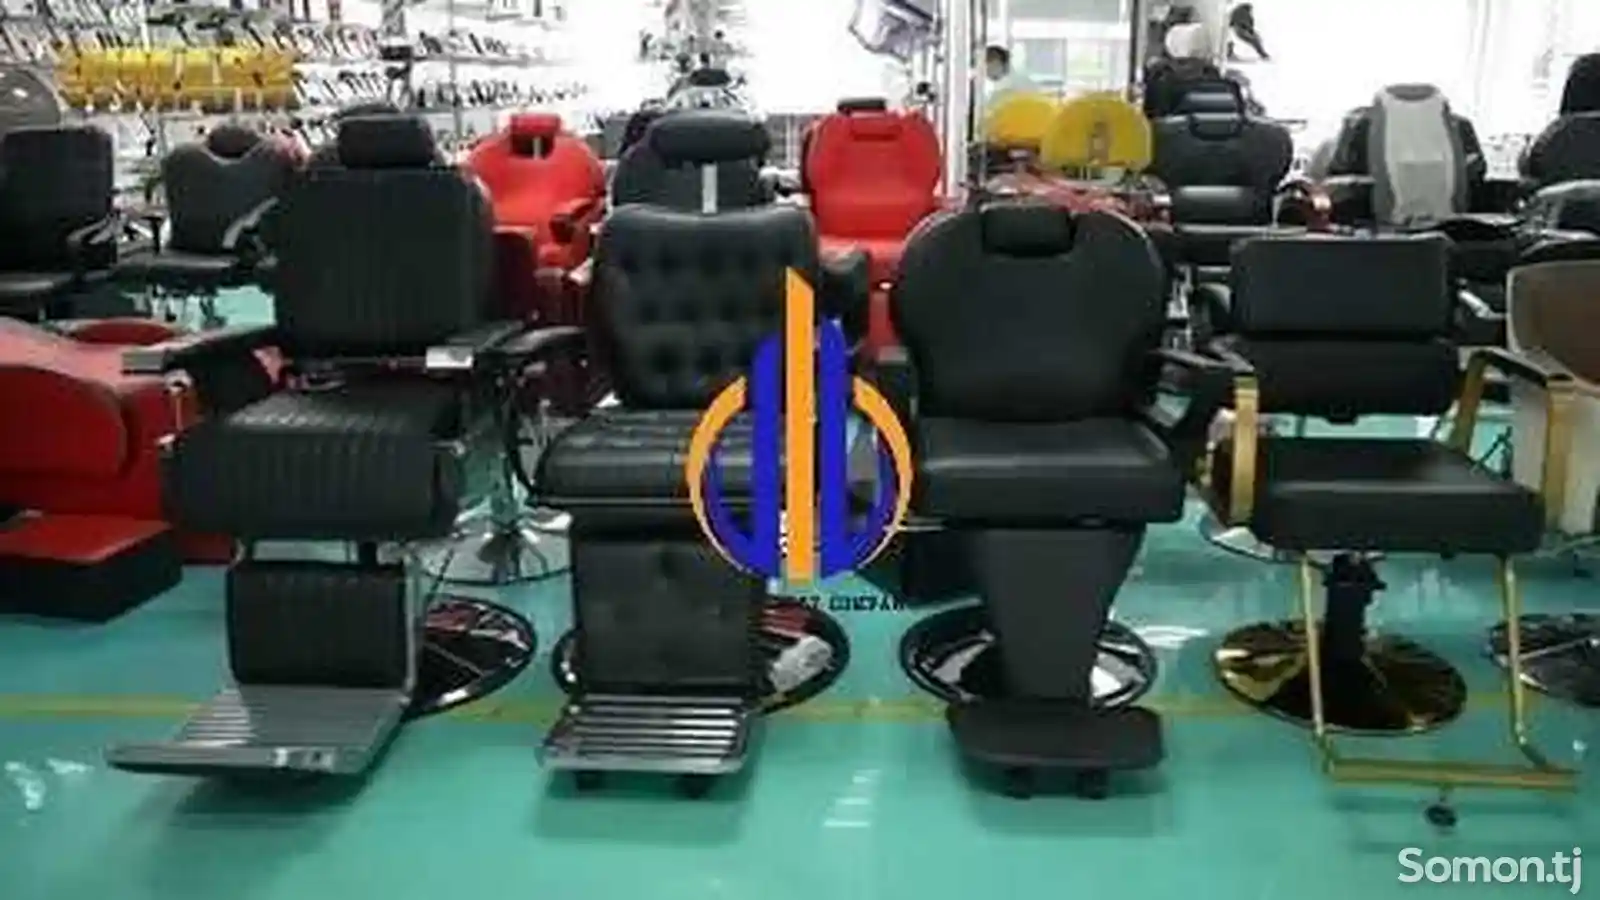 Кресло для парикмахерской-2